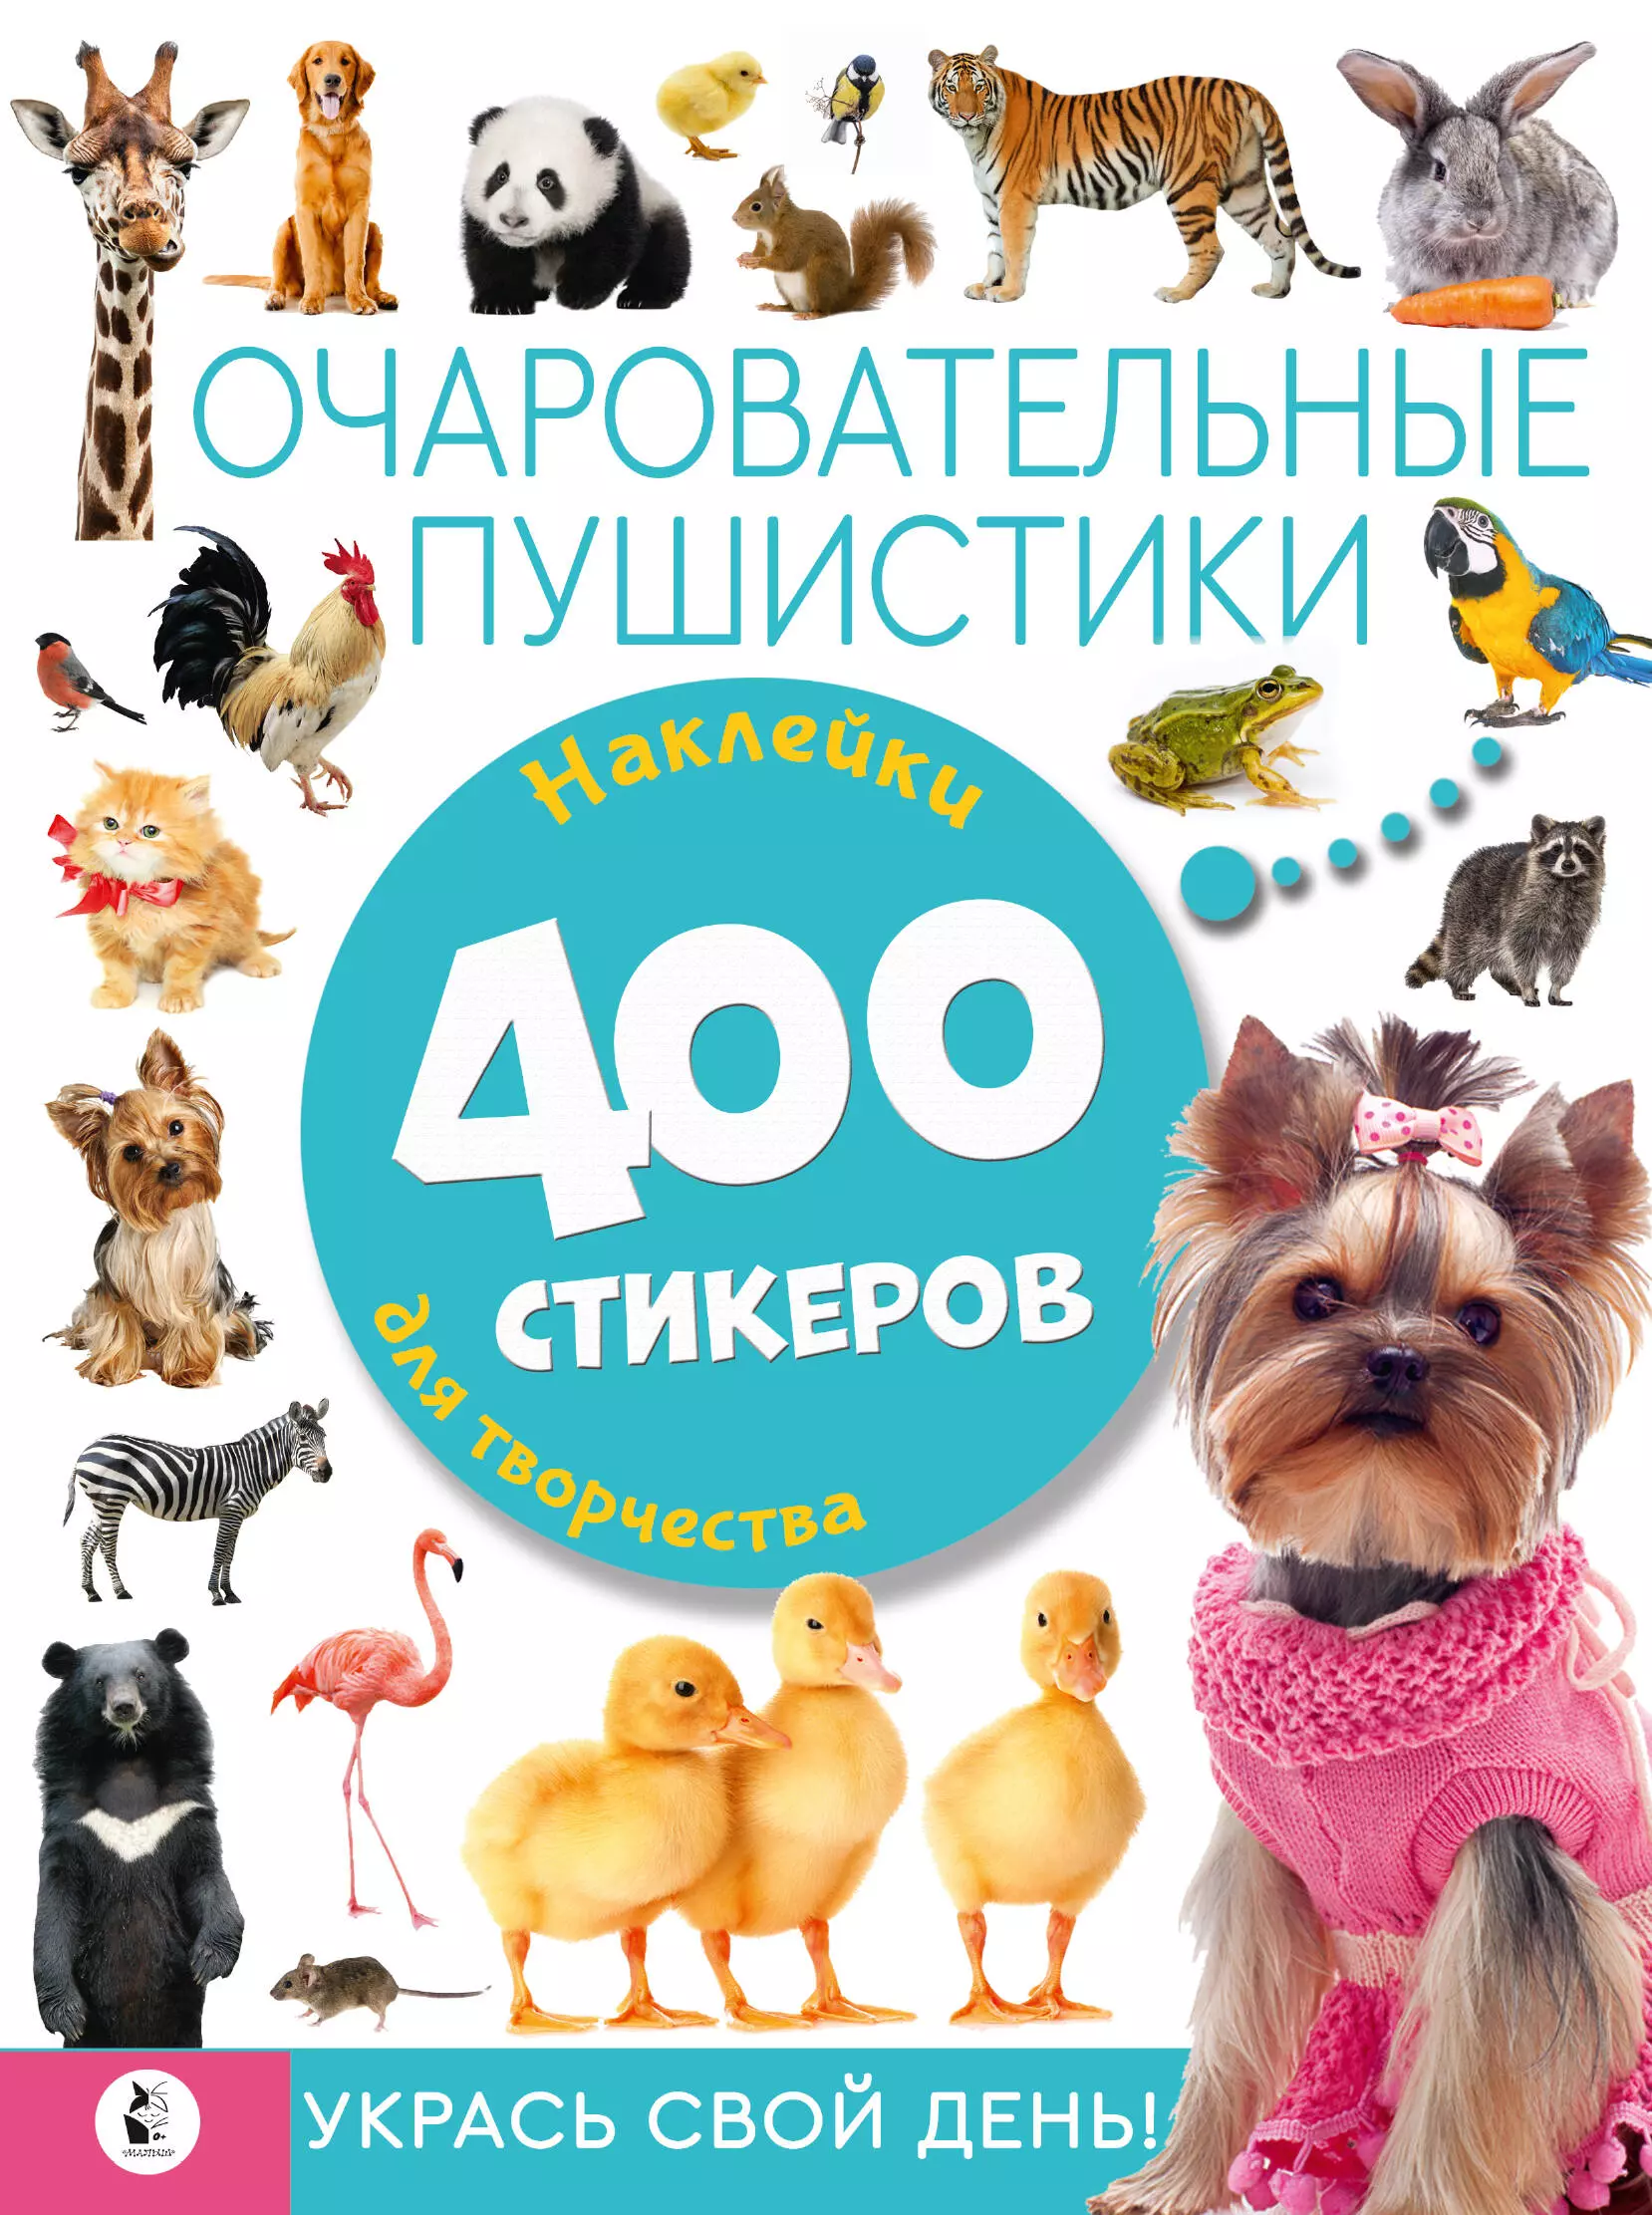 Очаровательные пушистики. 400 стикеров альбом с милыми мультяшными животными для стикеров фотография для журнал дневника